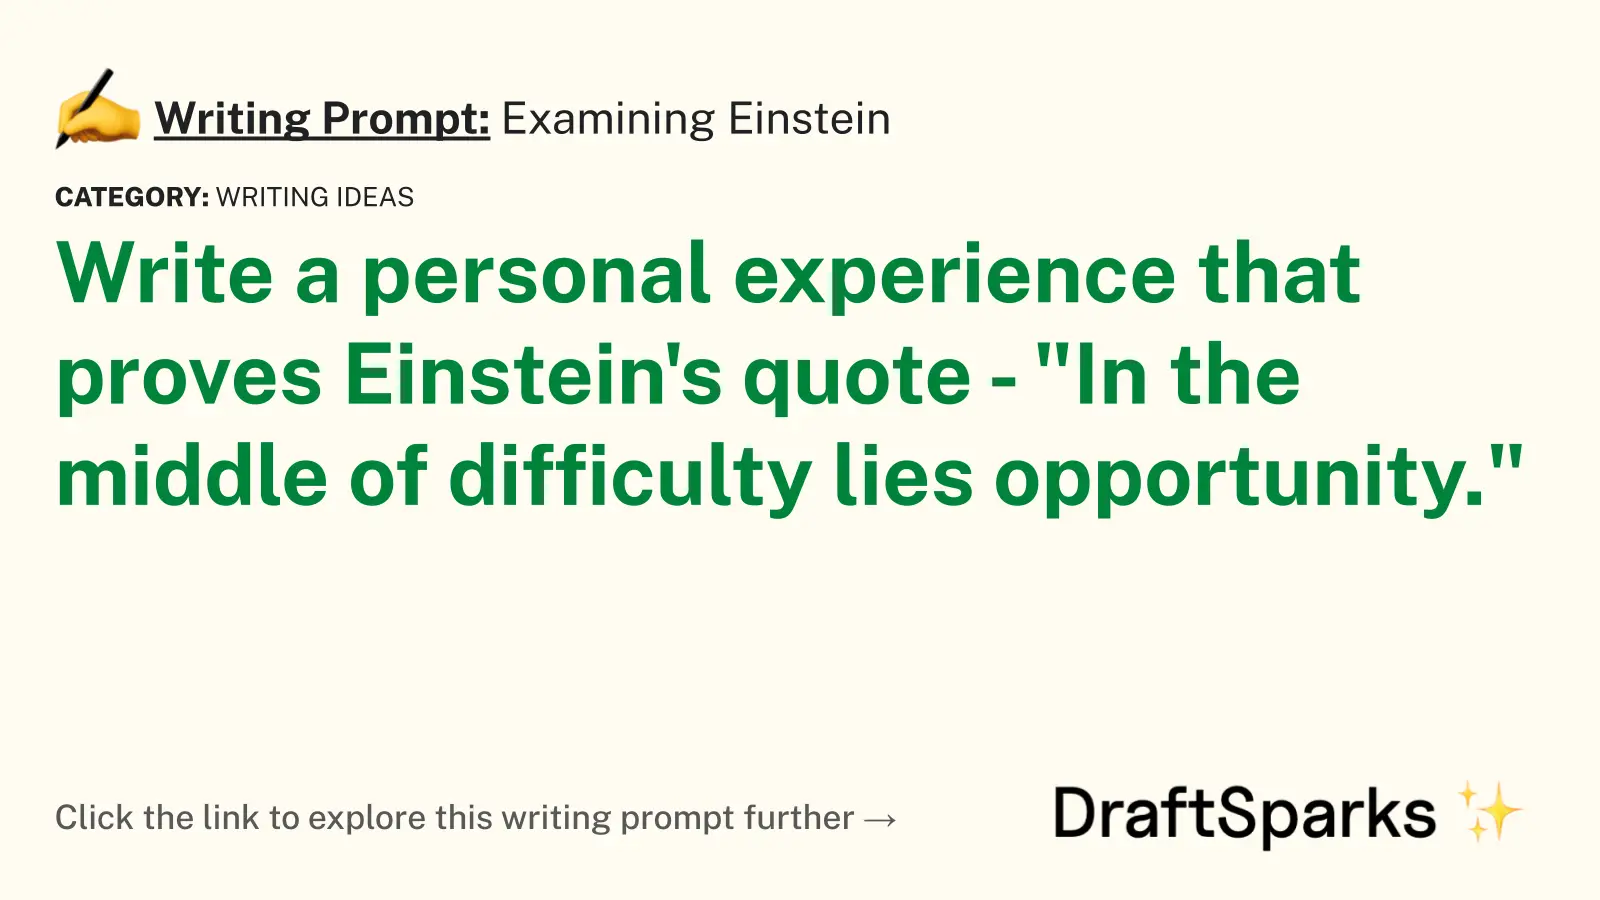 Examining Einstein